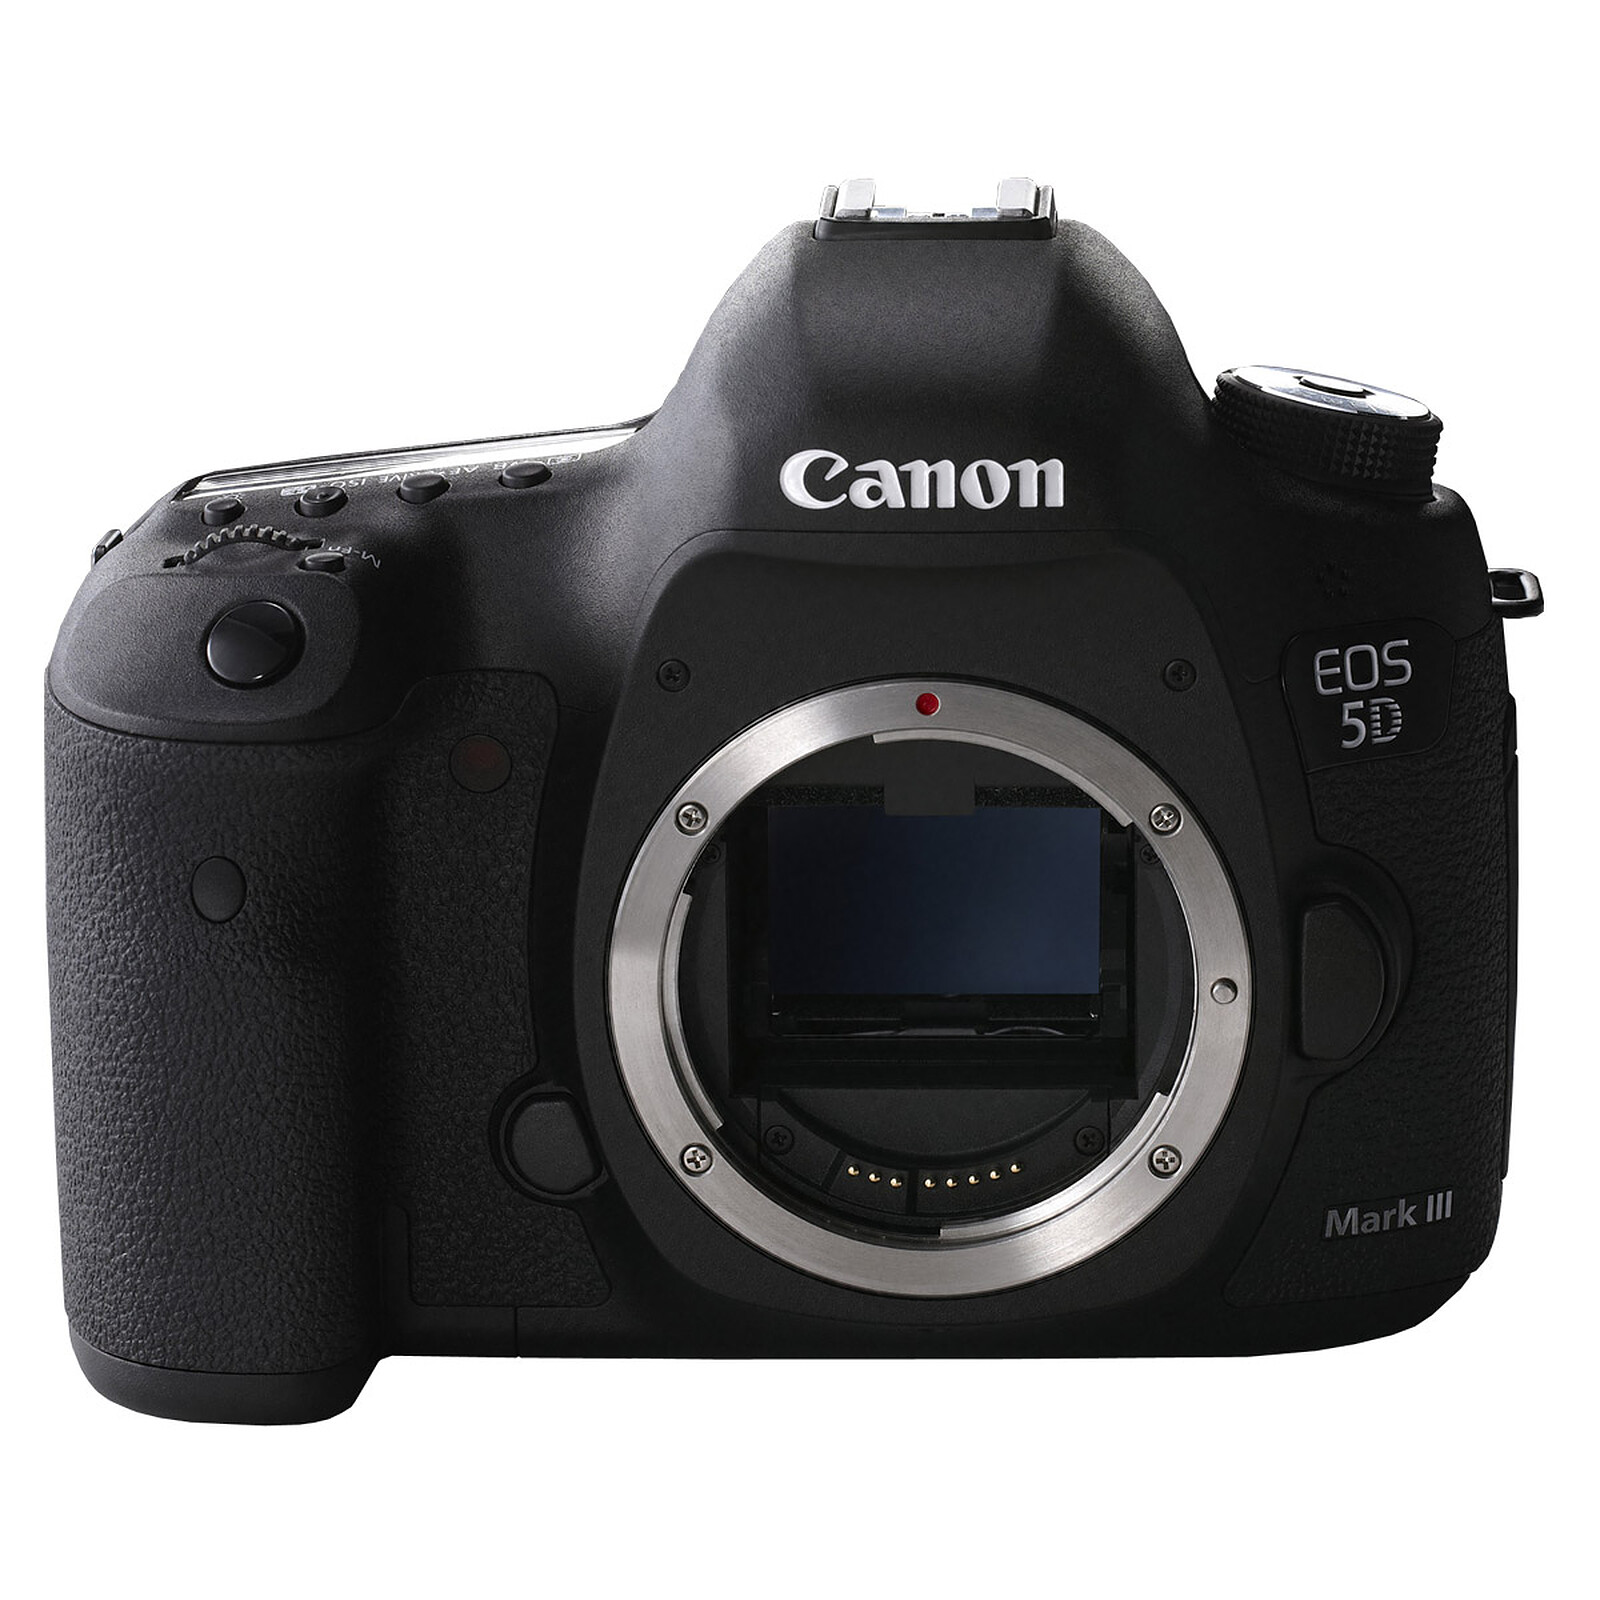  Canon  EOS 5D  Mark  III  Appareil photo  Reflex Canon  sur 